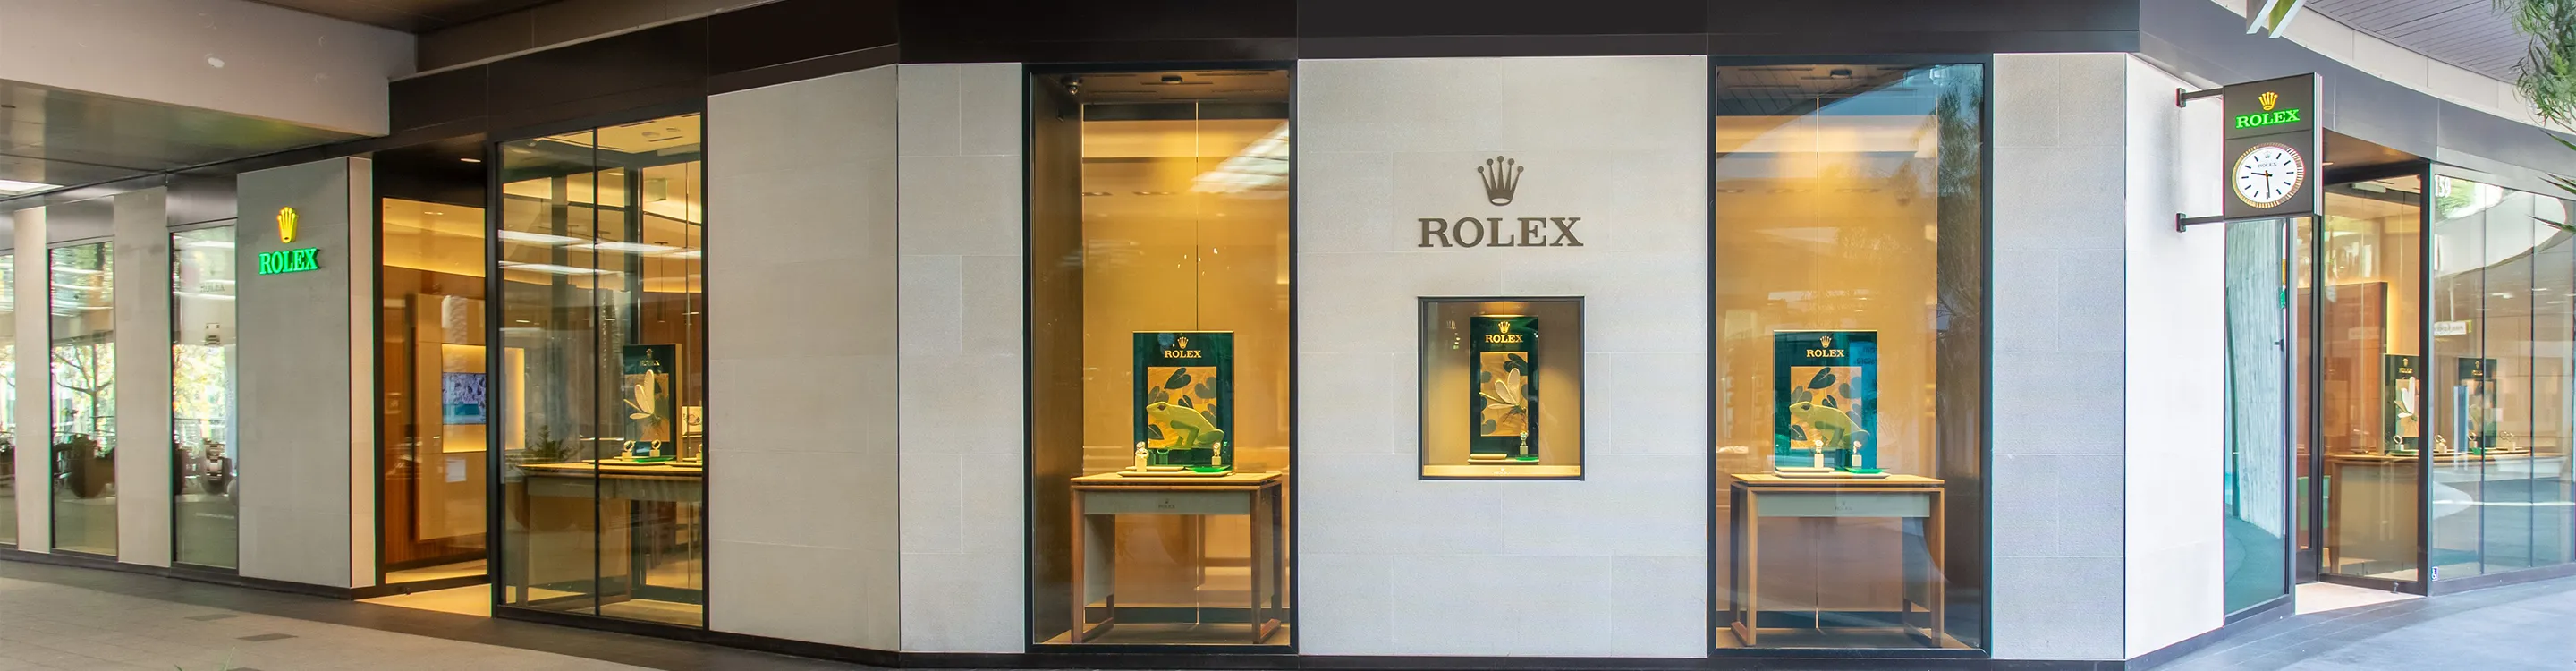 Rolex Boutique Santa Monica